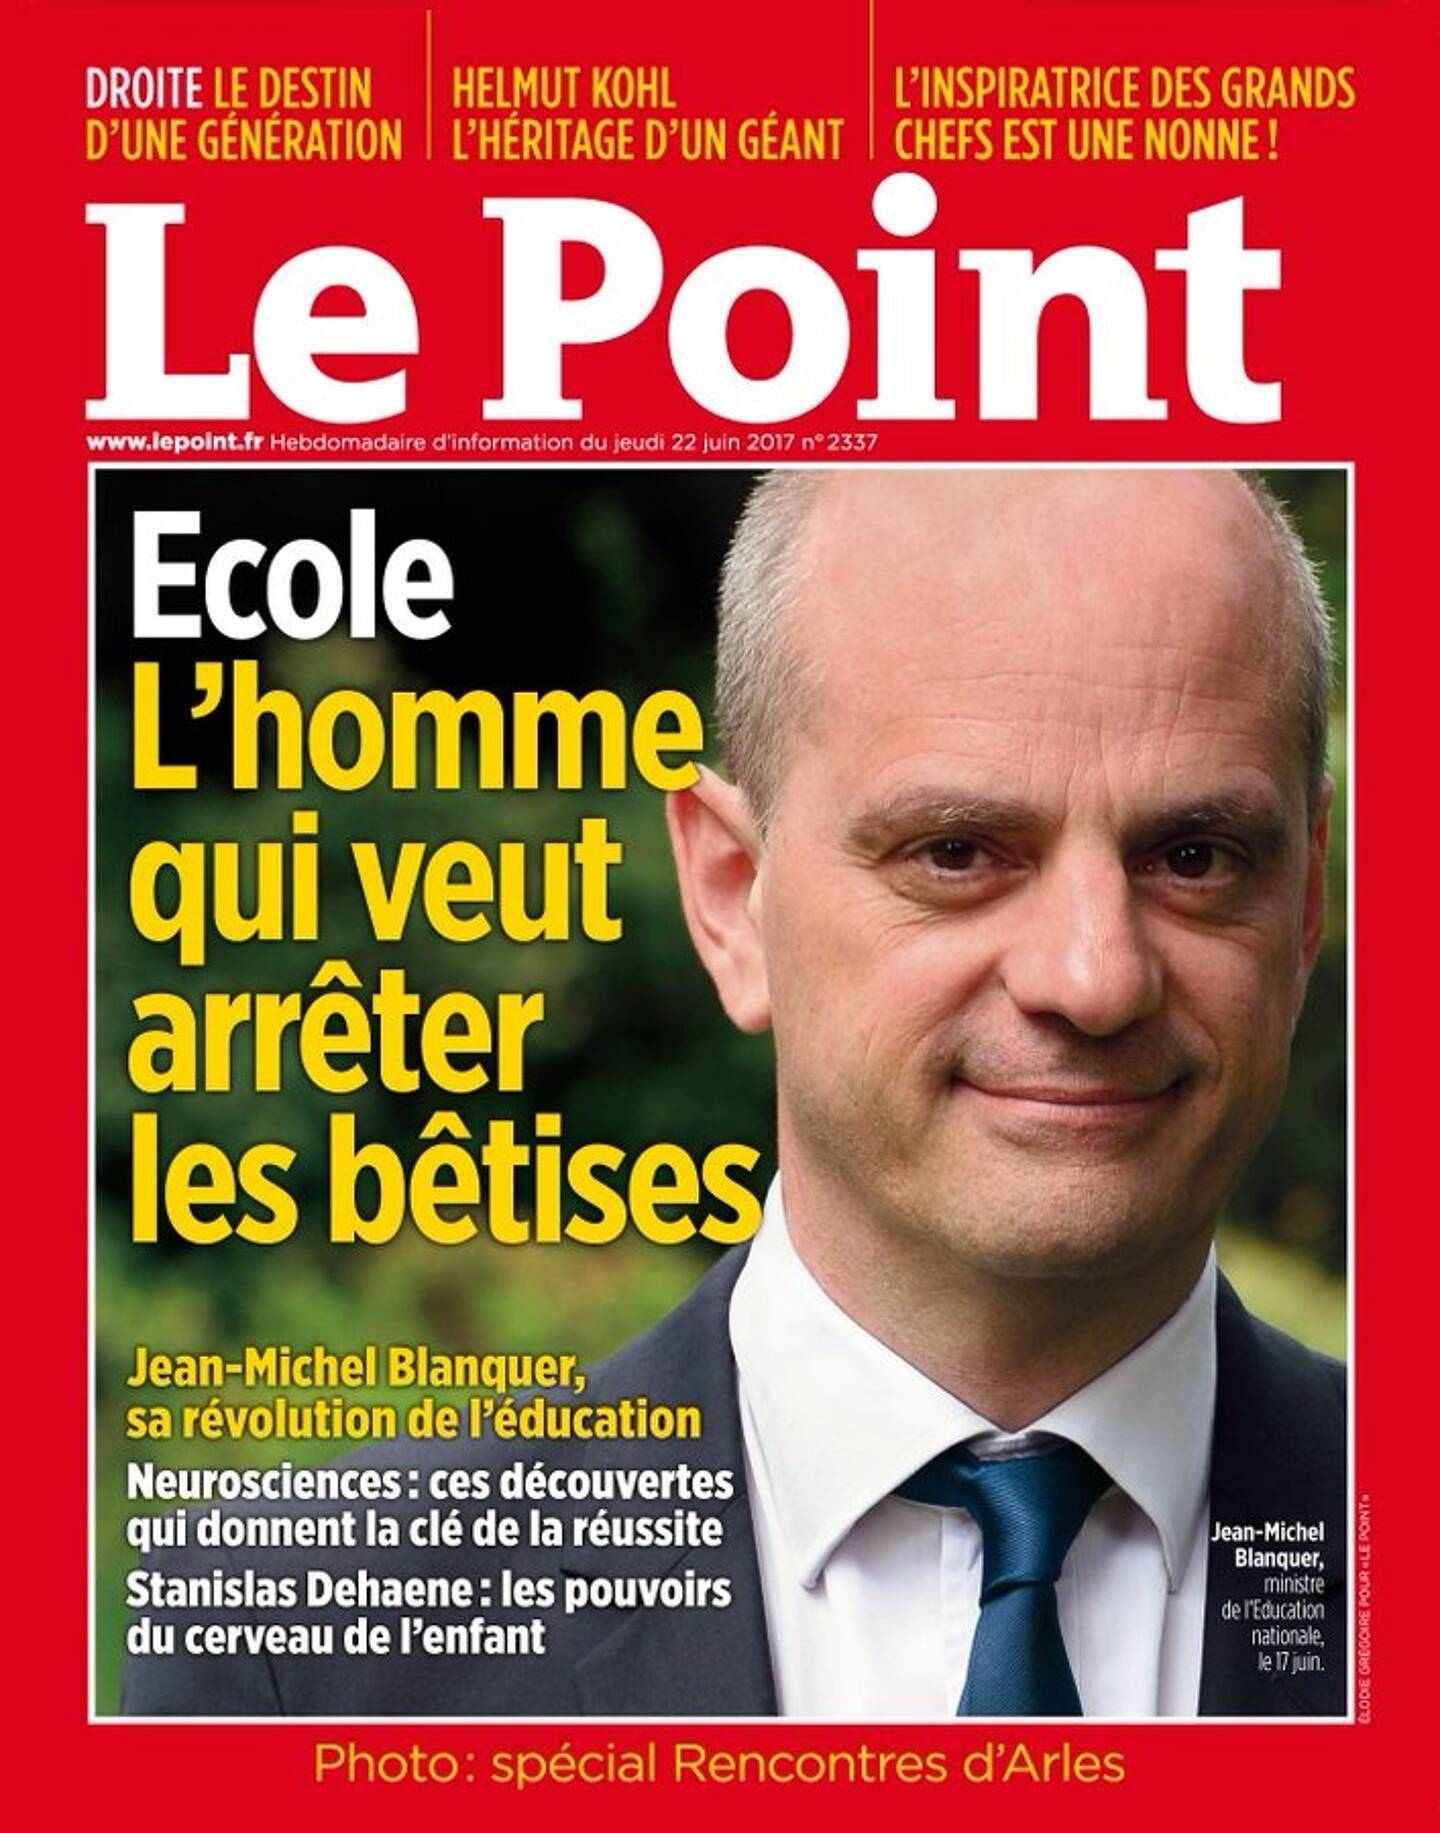 La une du magazine "Le Point" du 22 juin 2017.